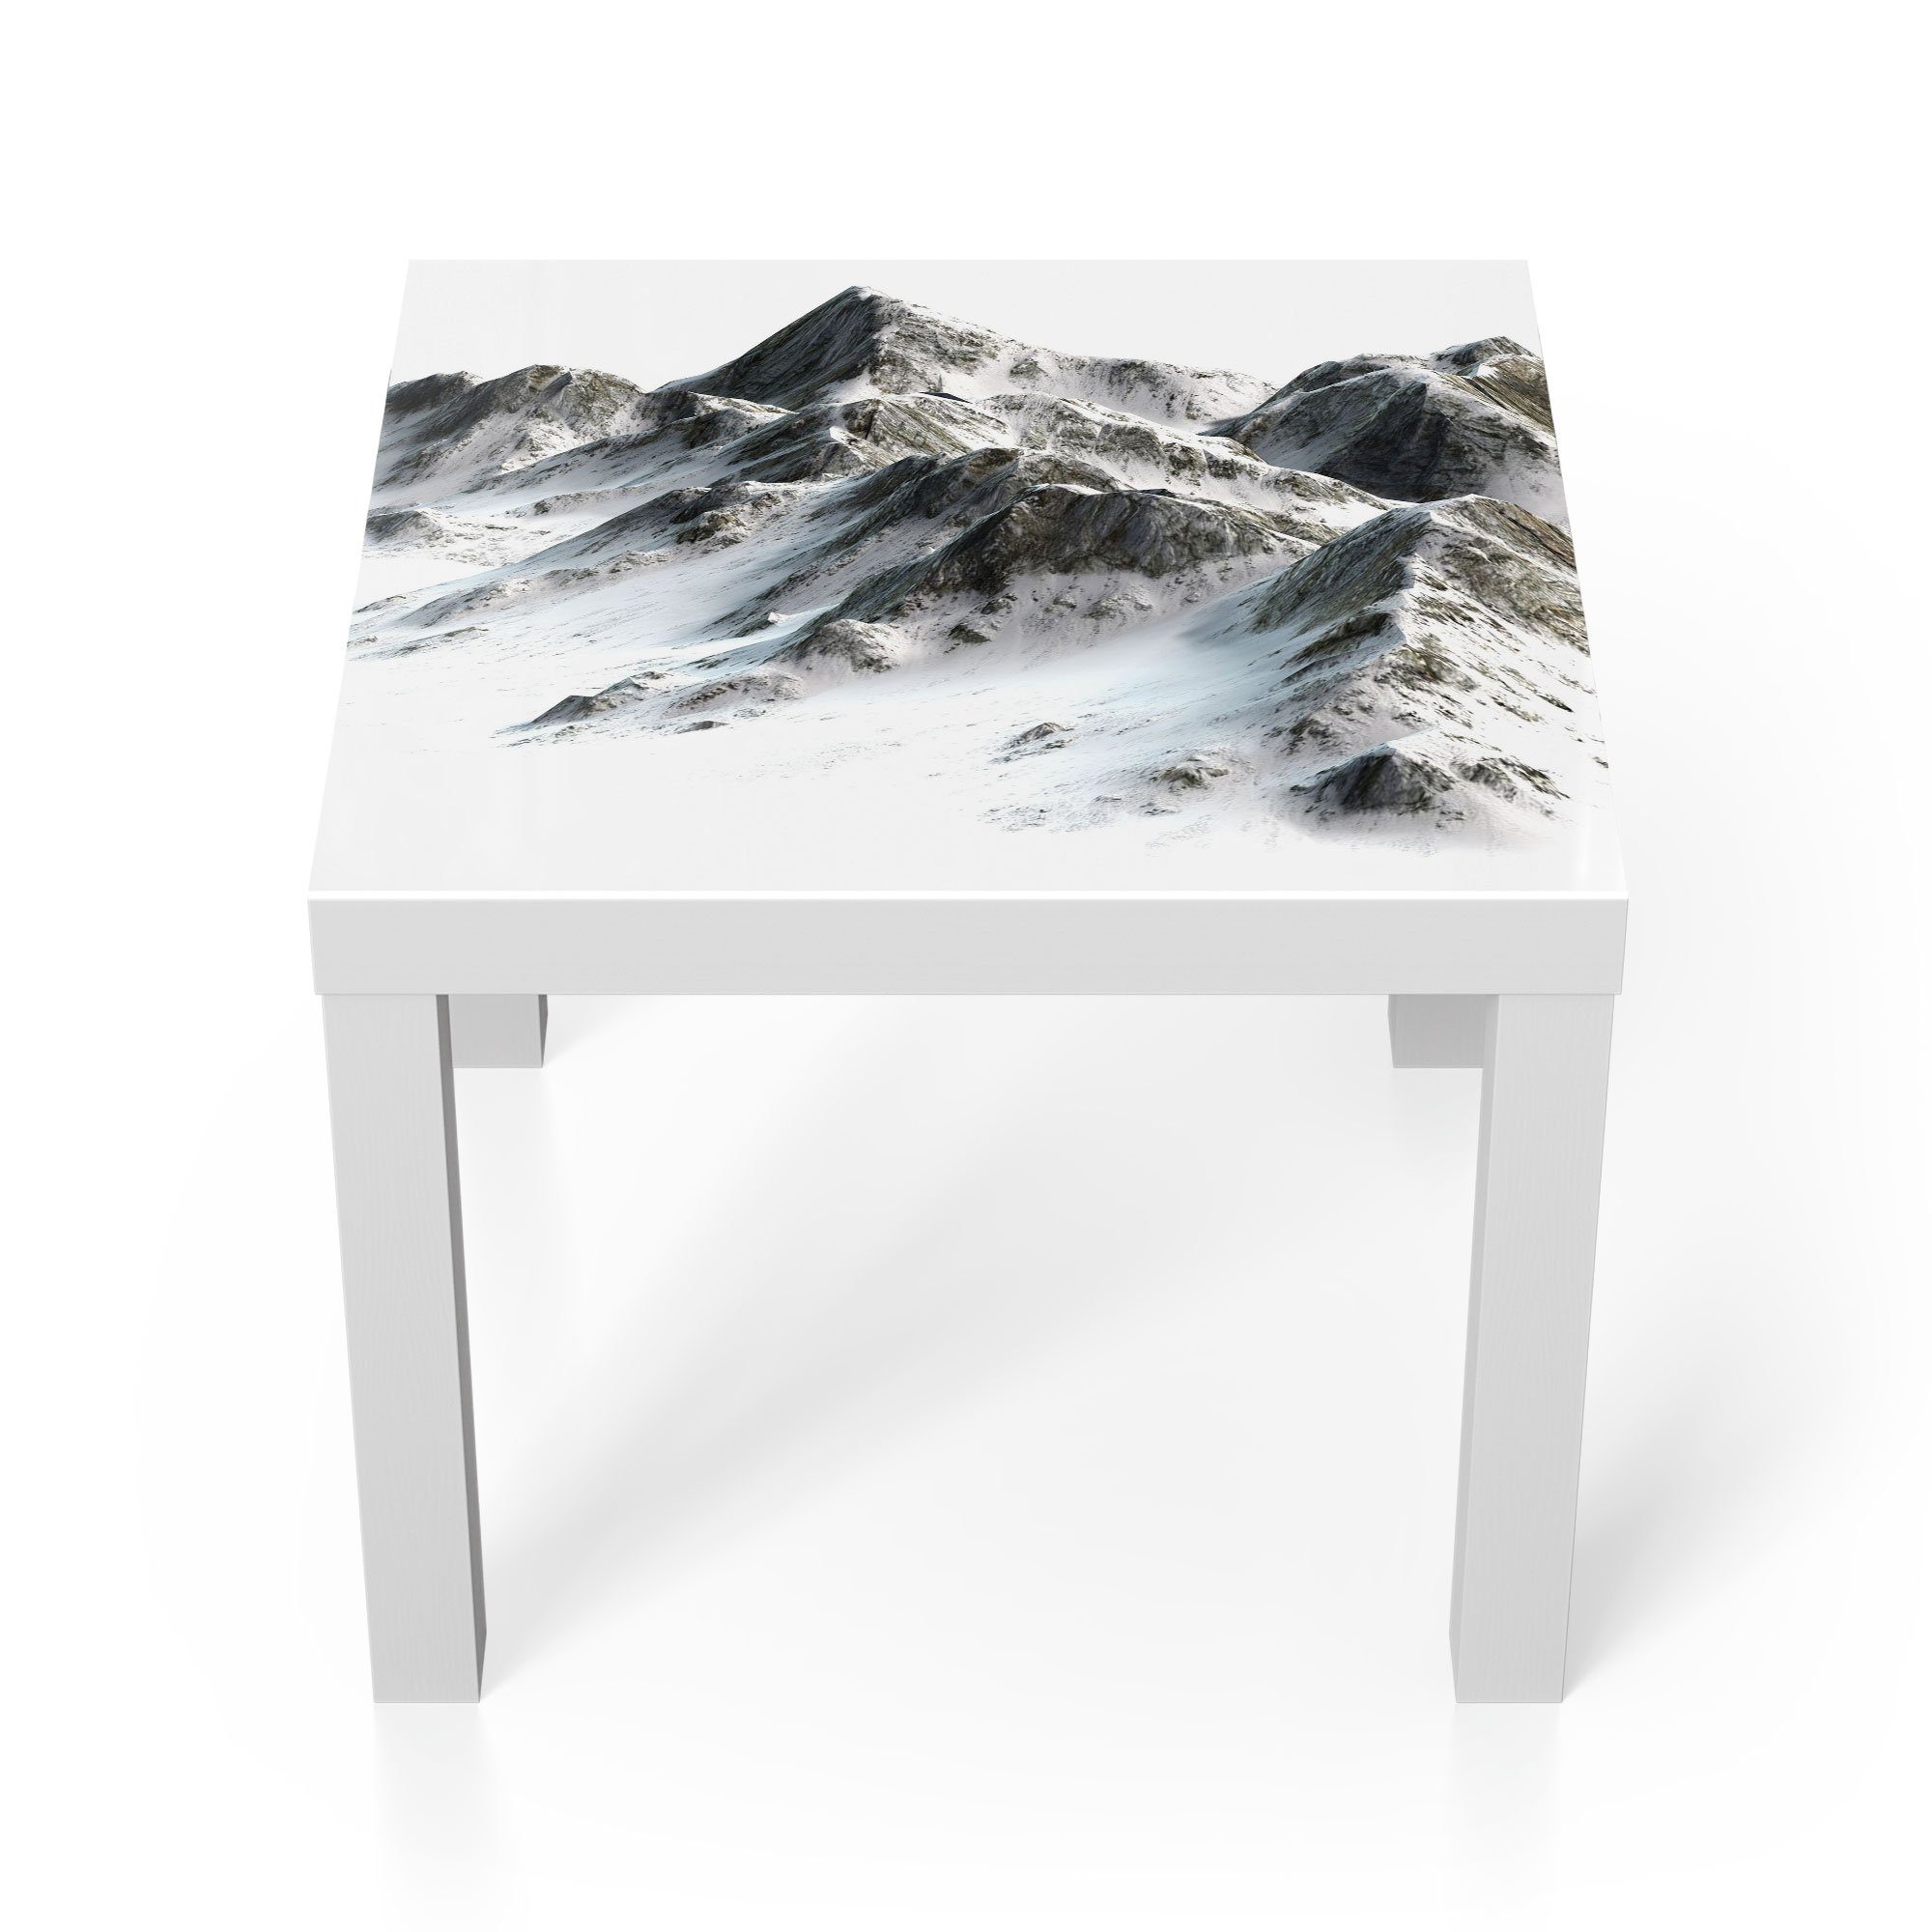 DEQORI Couchtisch 'Verschneites Bergmassiv', Glas Beistelltisch Glastisch modern Weiß